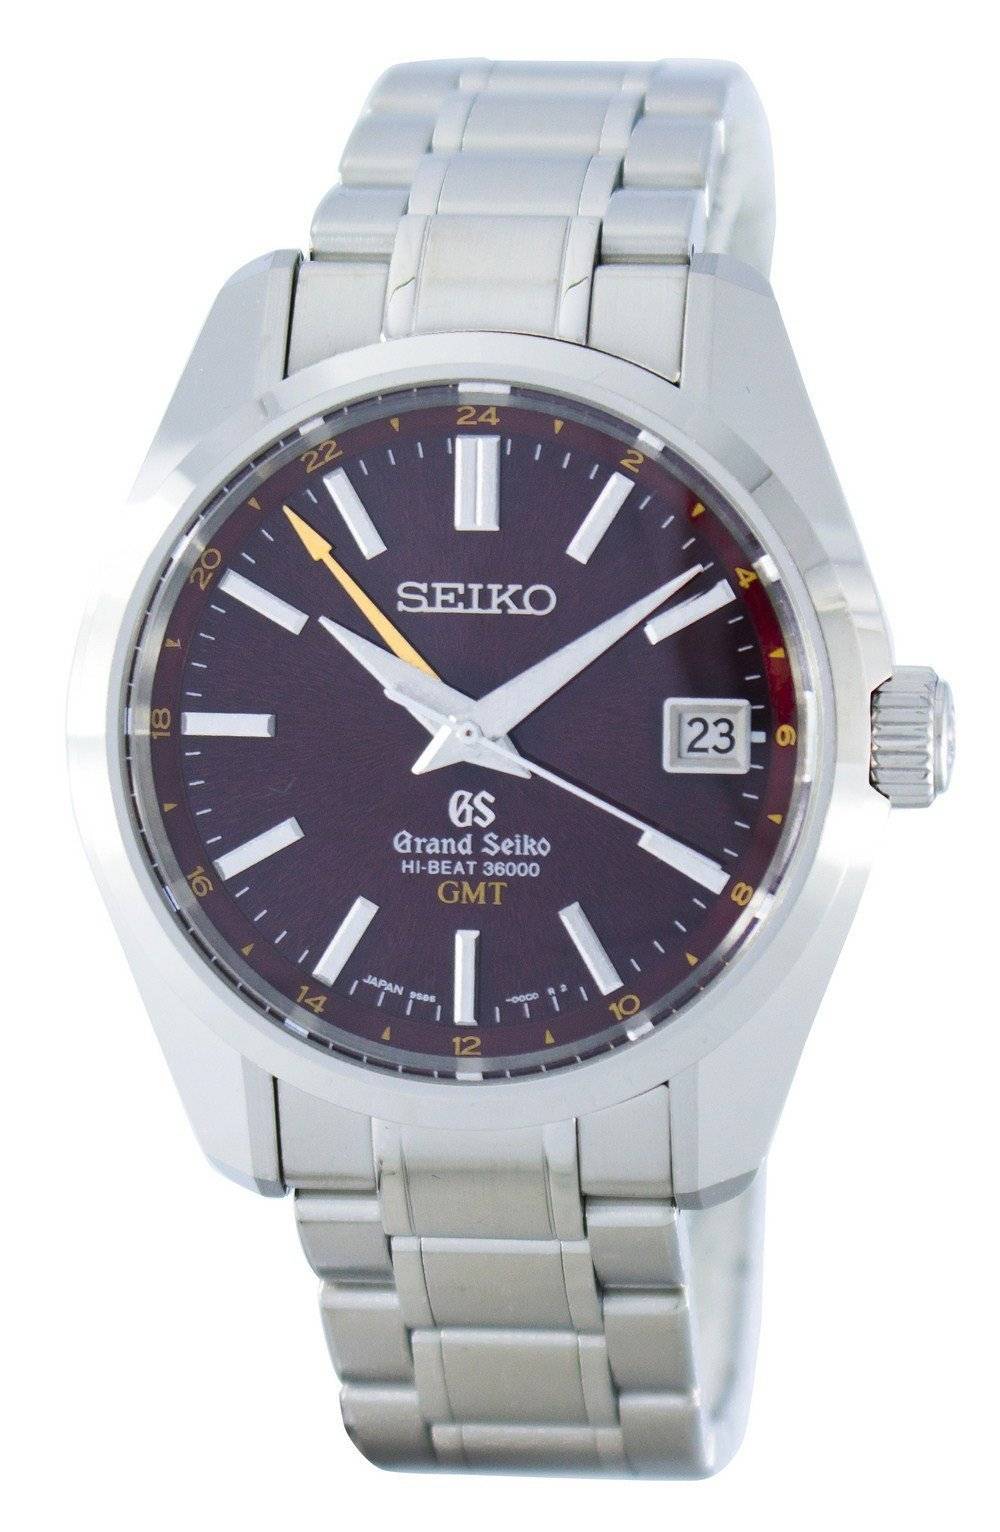 Grand Seiko Hi-Beat 36000 GMT Phiên bản giới hạn Tự động Đồng hồ nam  SBGJ021 vi